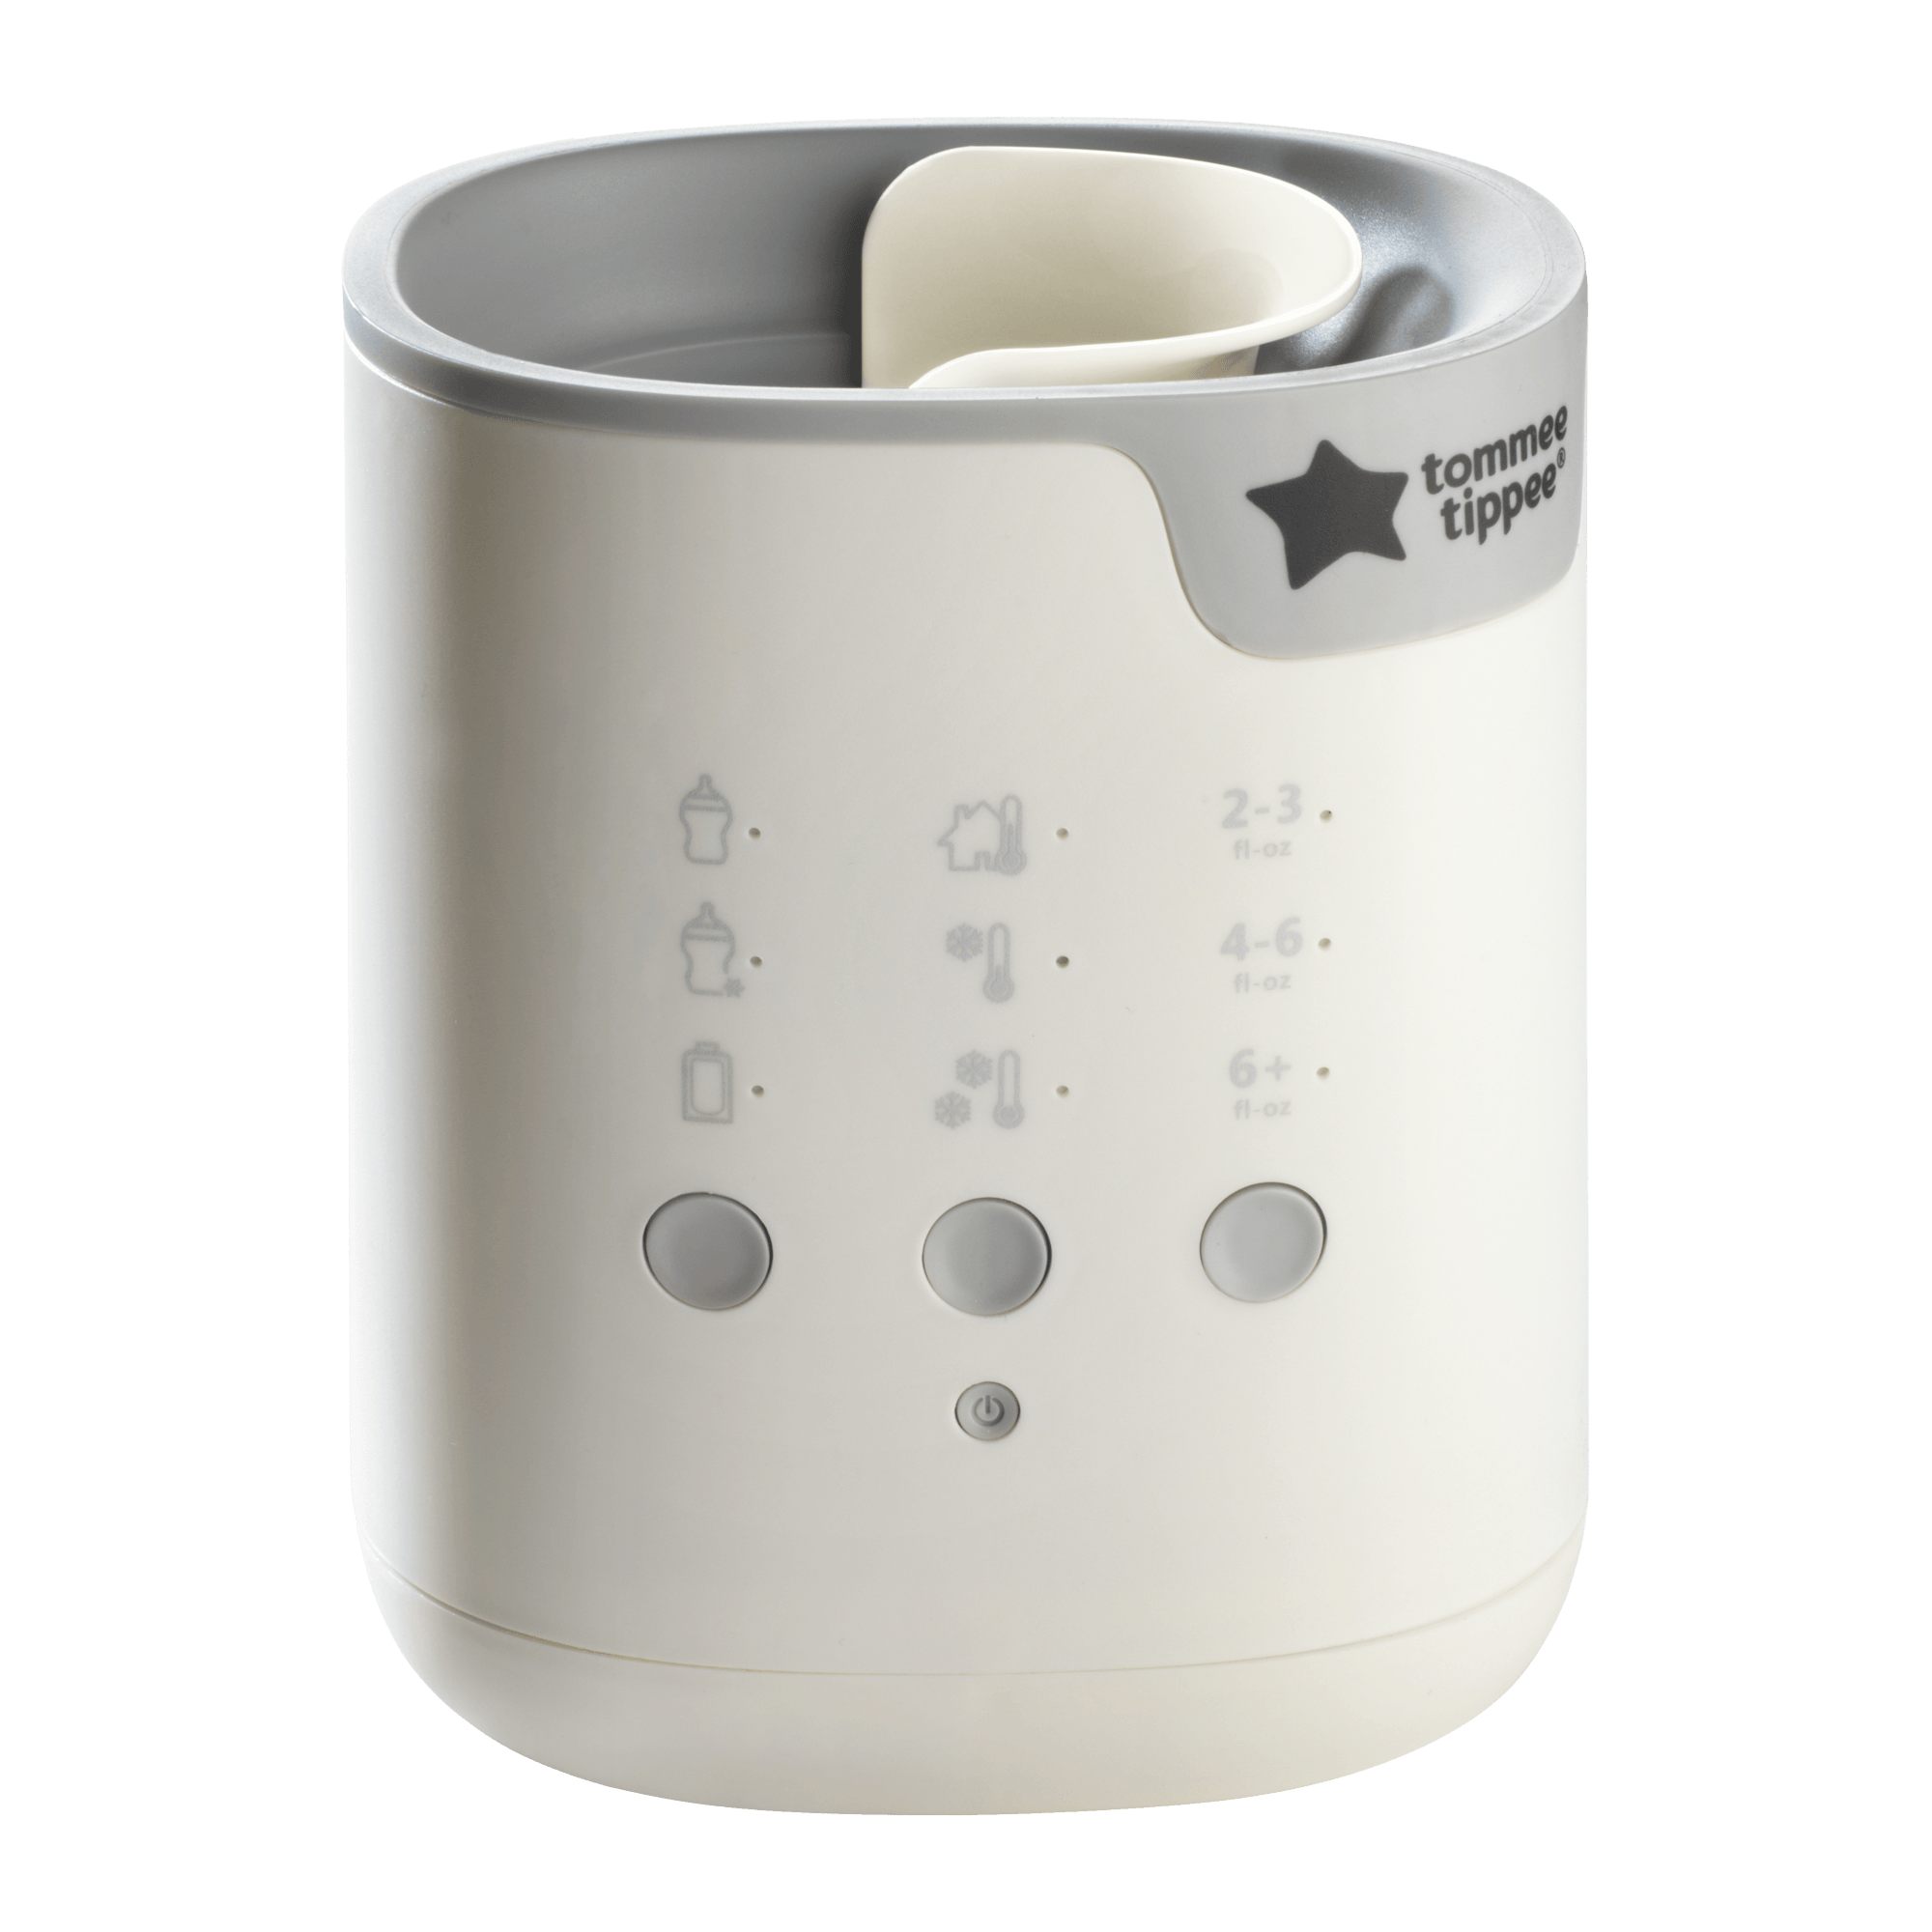 3合1 智能奶瓶及儲奶袋加熱器 - Tommee Tippee 香港官方網店